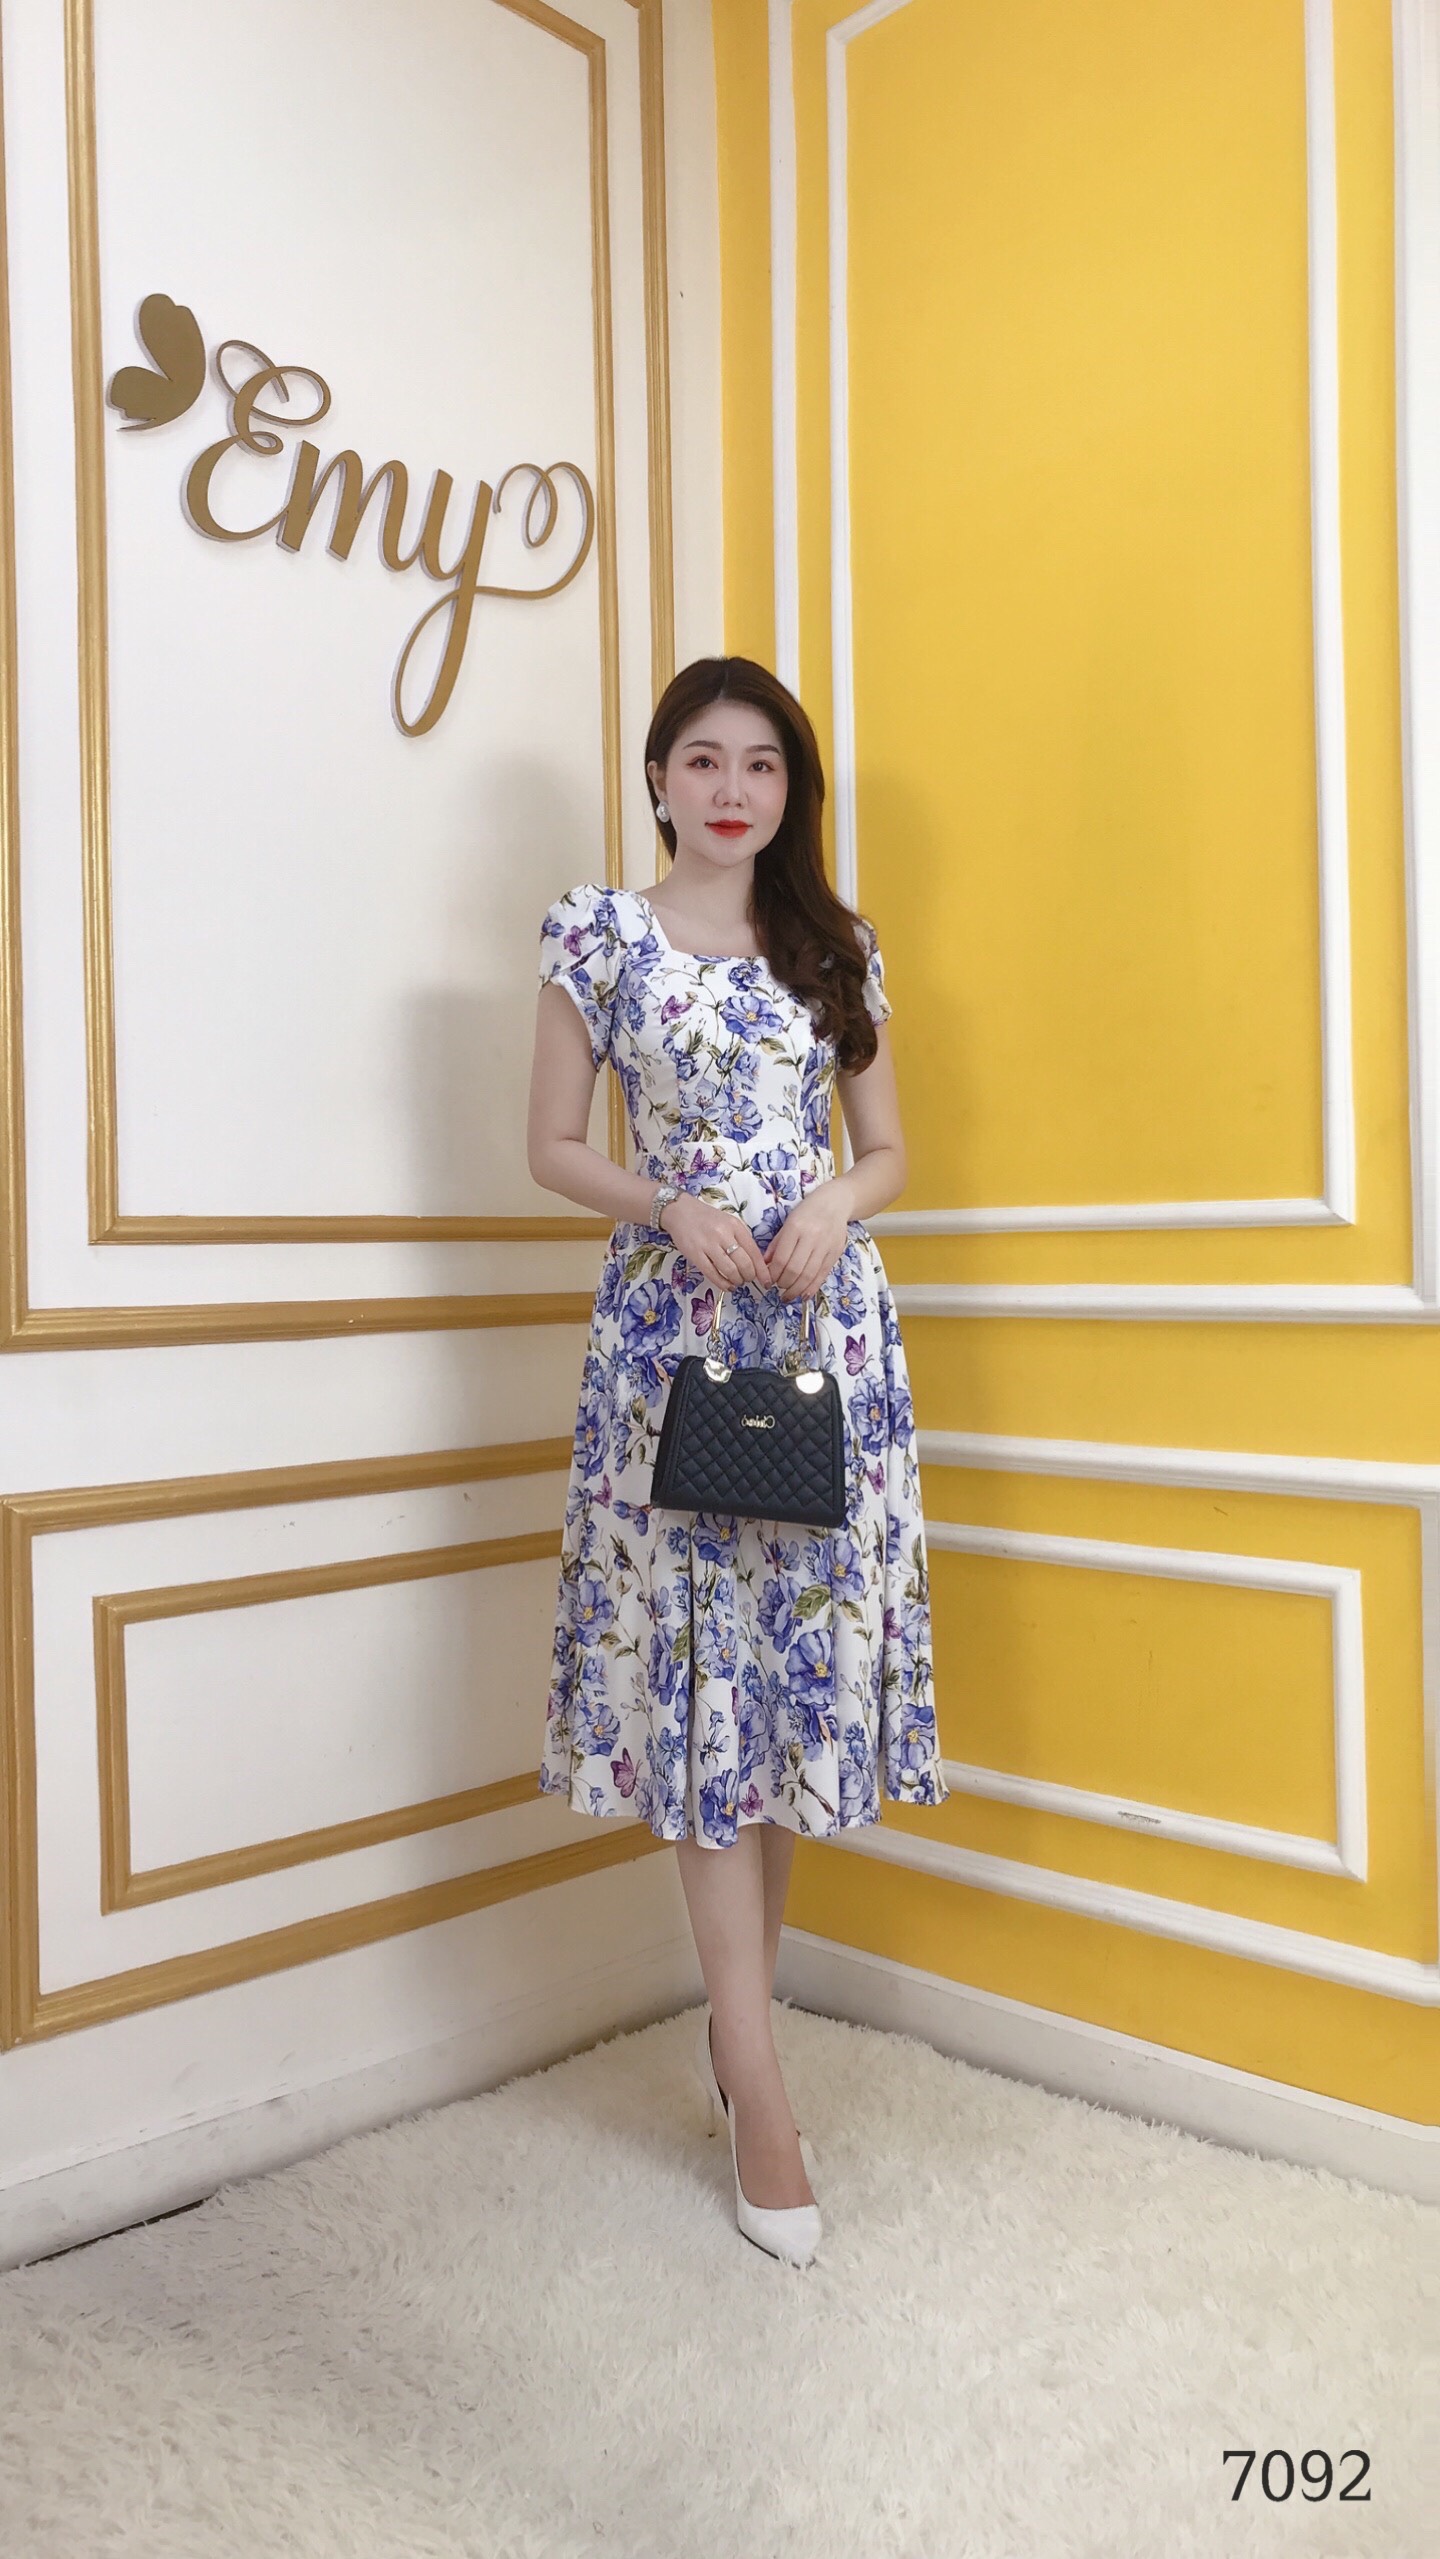 Váy Emy mở chi nhánh mới tại Gò Vấp siêu to siêu khổng lồ ngập tràn ưu đãi   Womenvn